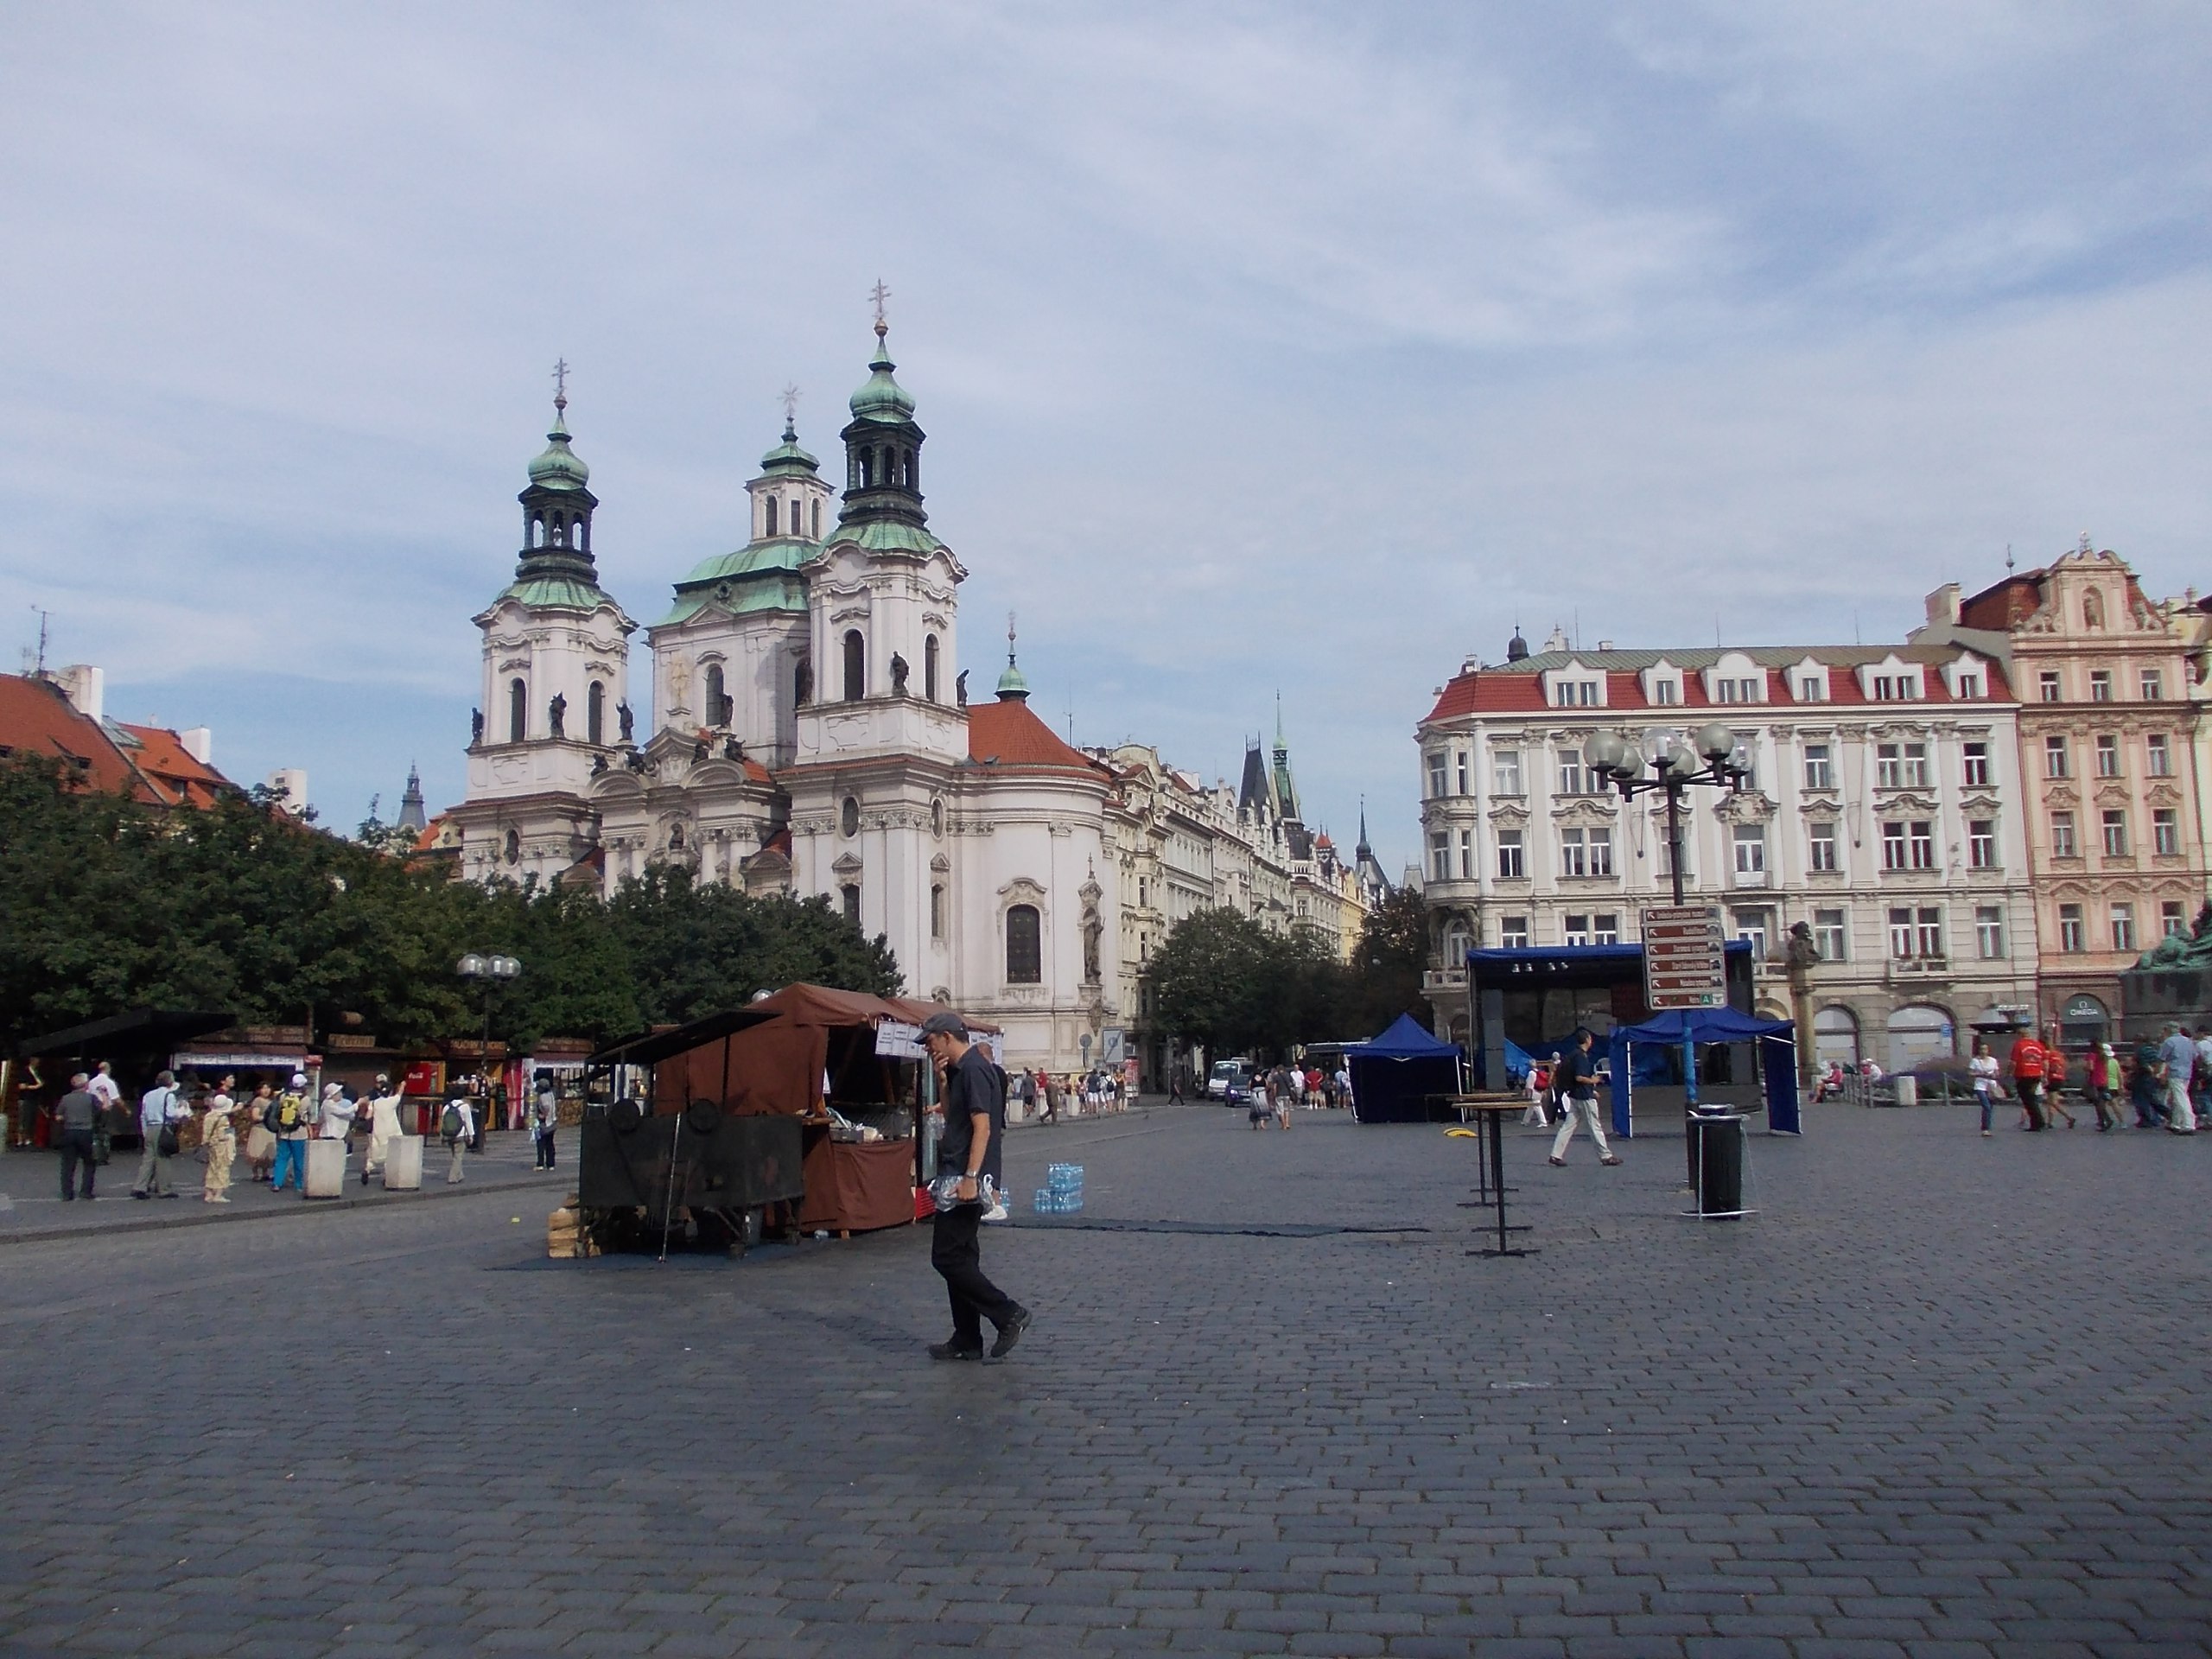 Достопримечательности Староместской площади в Праге 